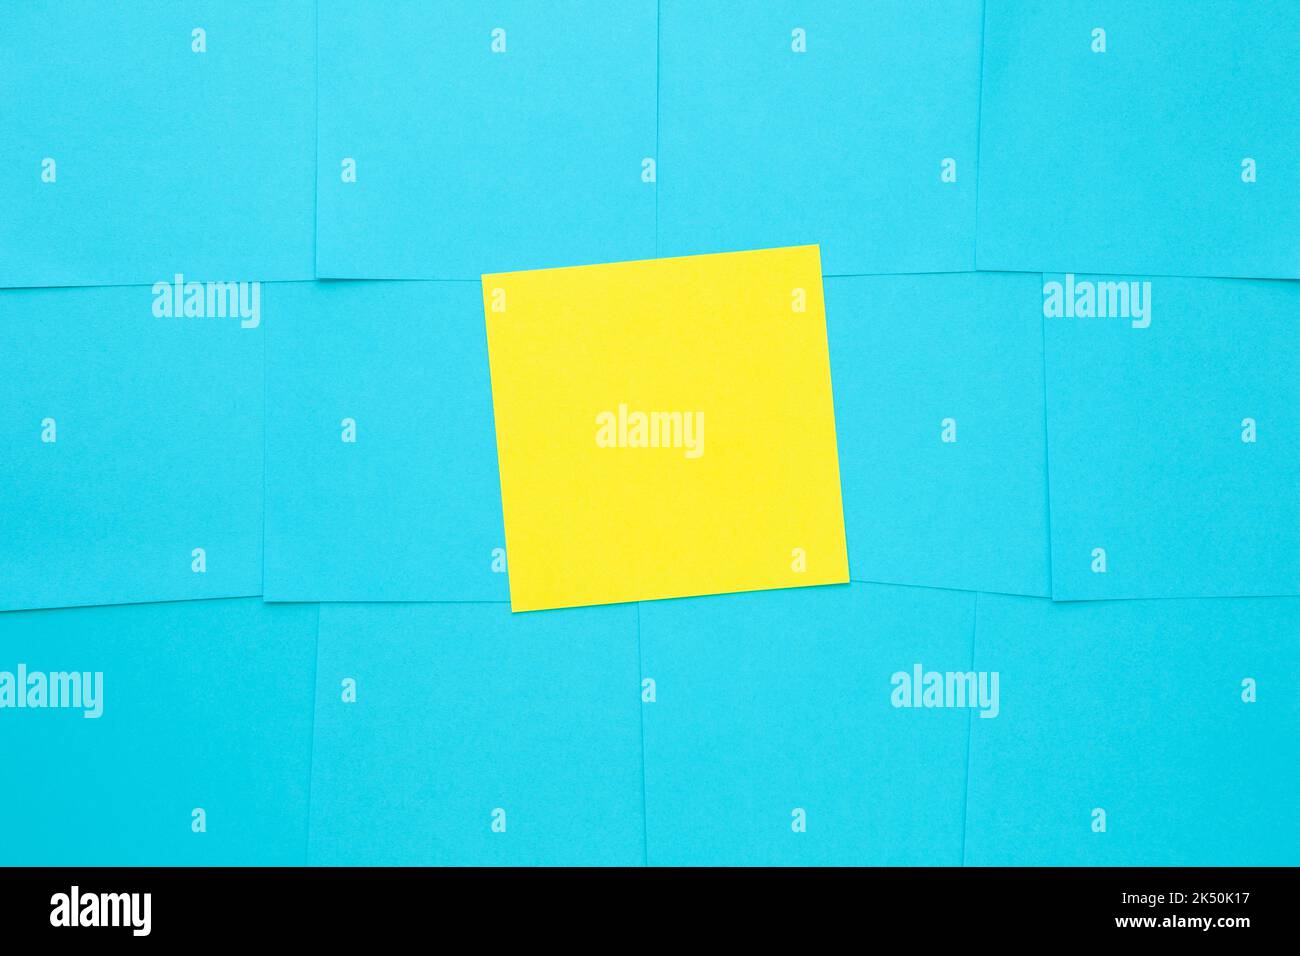 Varias notas adhesivas azules en blanco y una amarilla en el centro del tablón de anuncios. Foto de stock